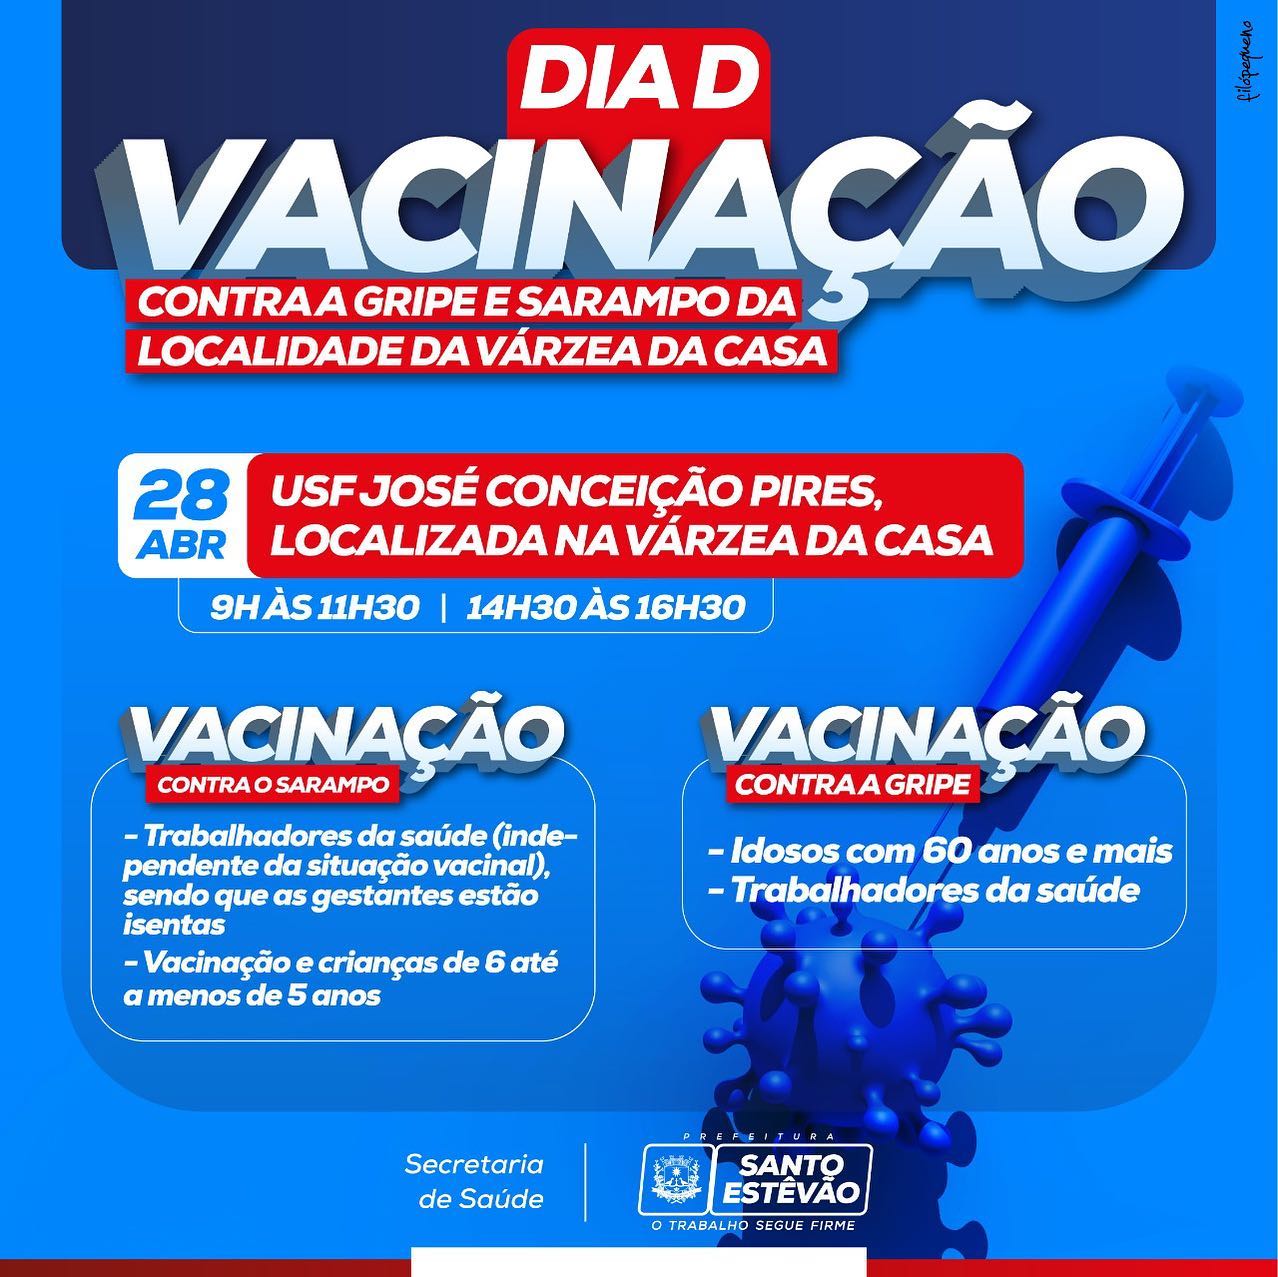 Dia D da Campanha de vacinação contra a Gripe e Sarampo